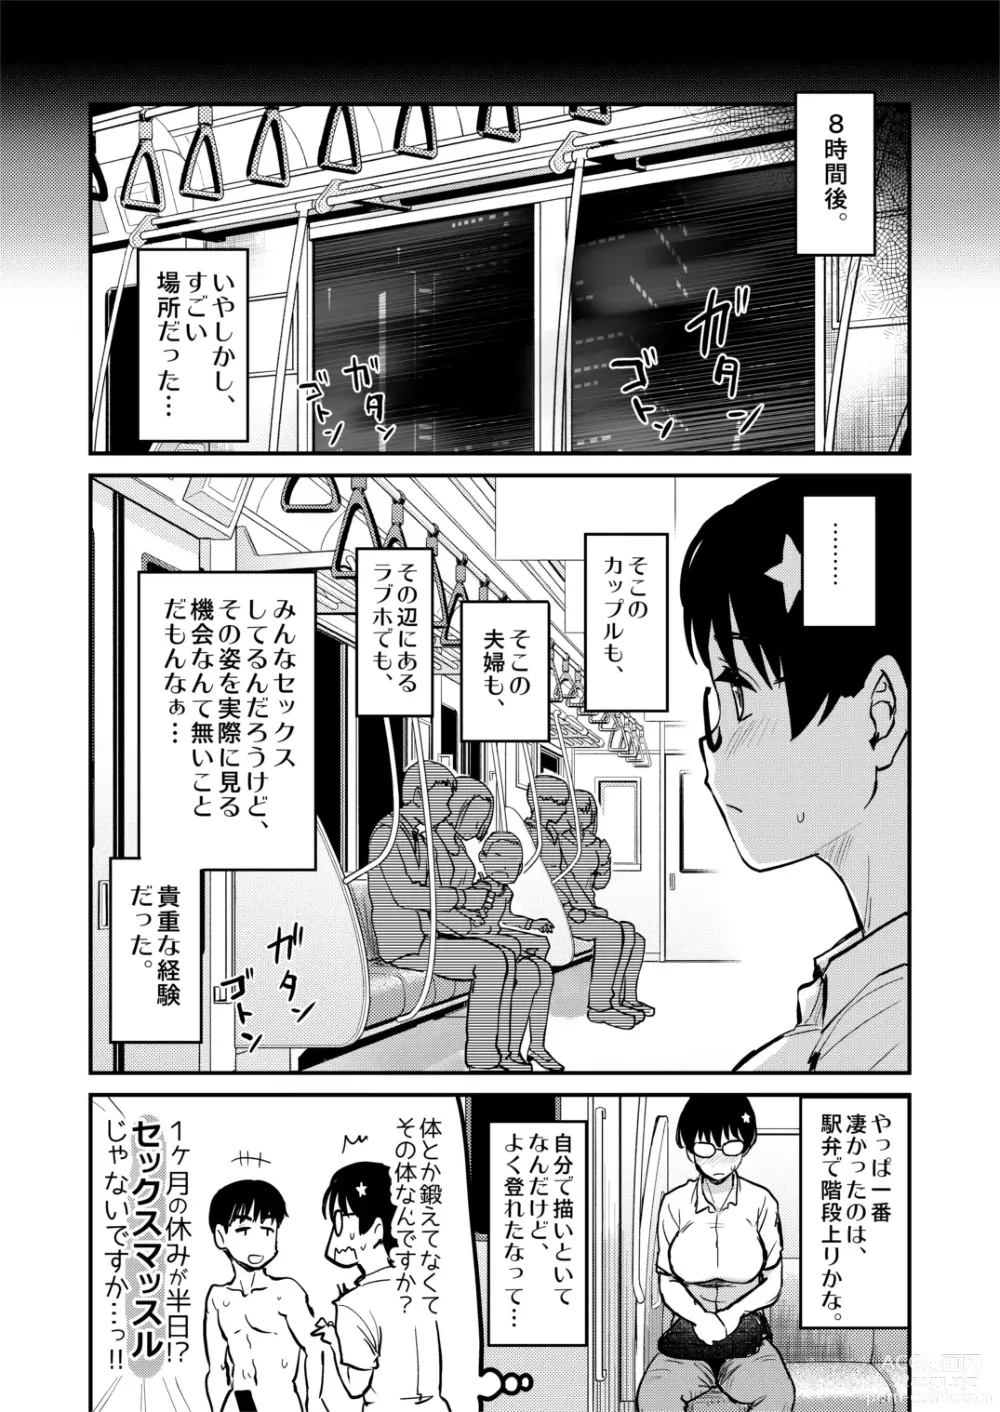 Page 23 of doujinshi Jibun no Kaita Manga ga Jissha AV ni!? Sekkaku nano de Satsuei Genba no Kengaku ni Ittekimashita.